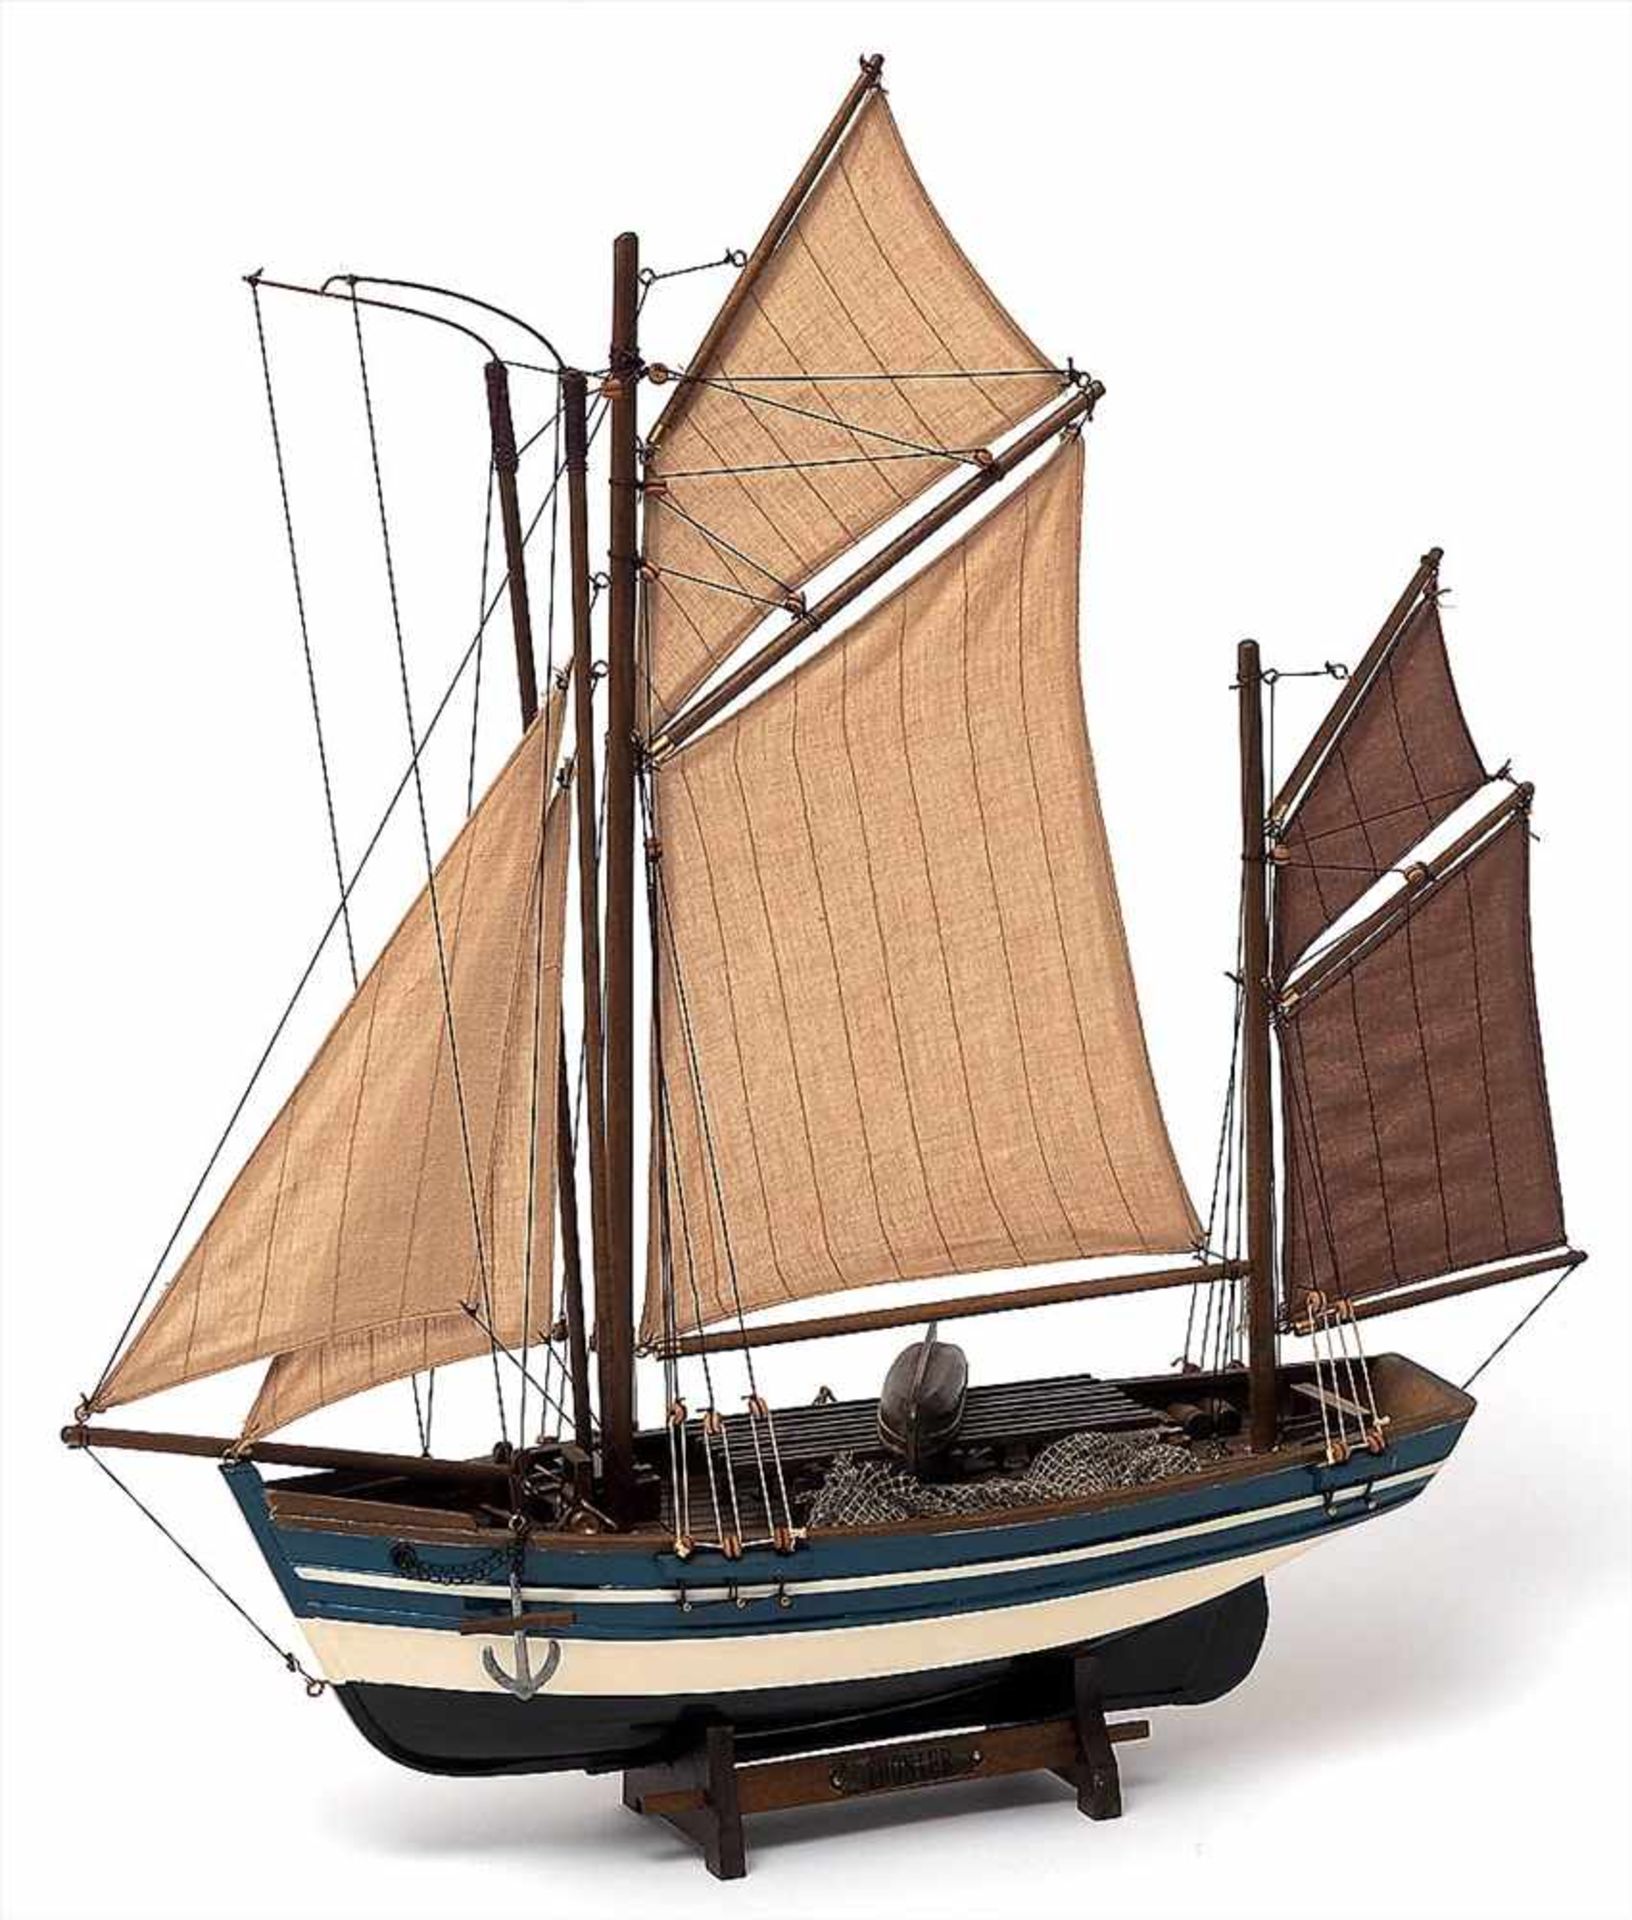 Modell eines FischerbootesHolz, farbig bemalt. H.56, L.52cm.